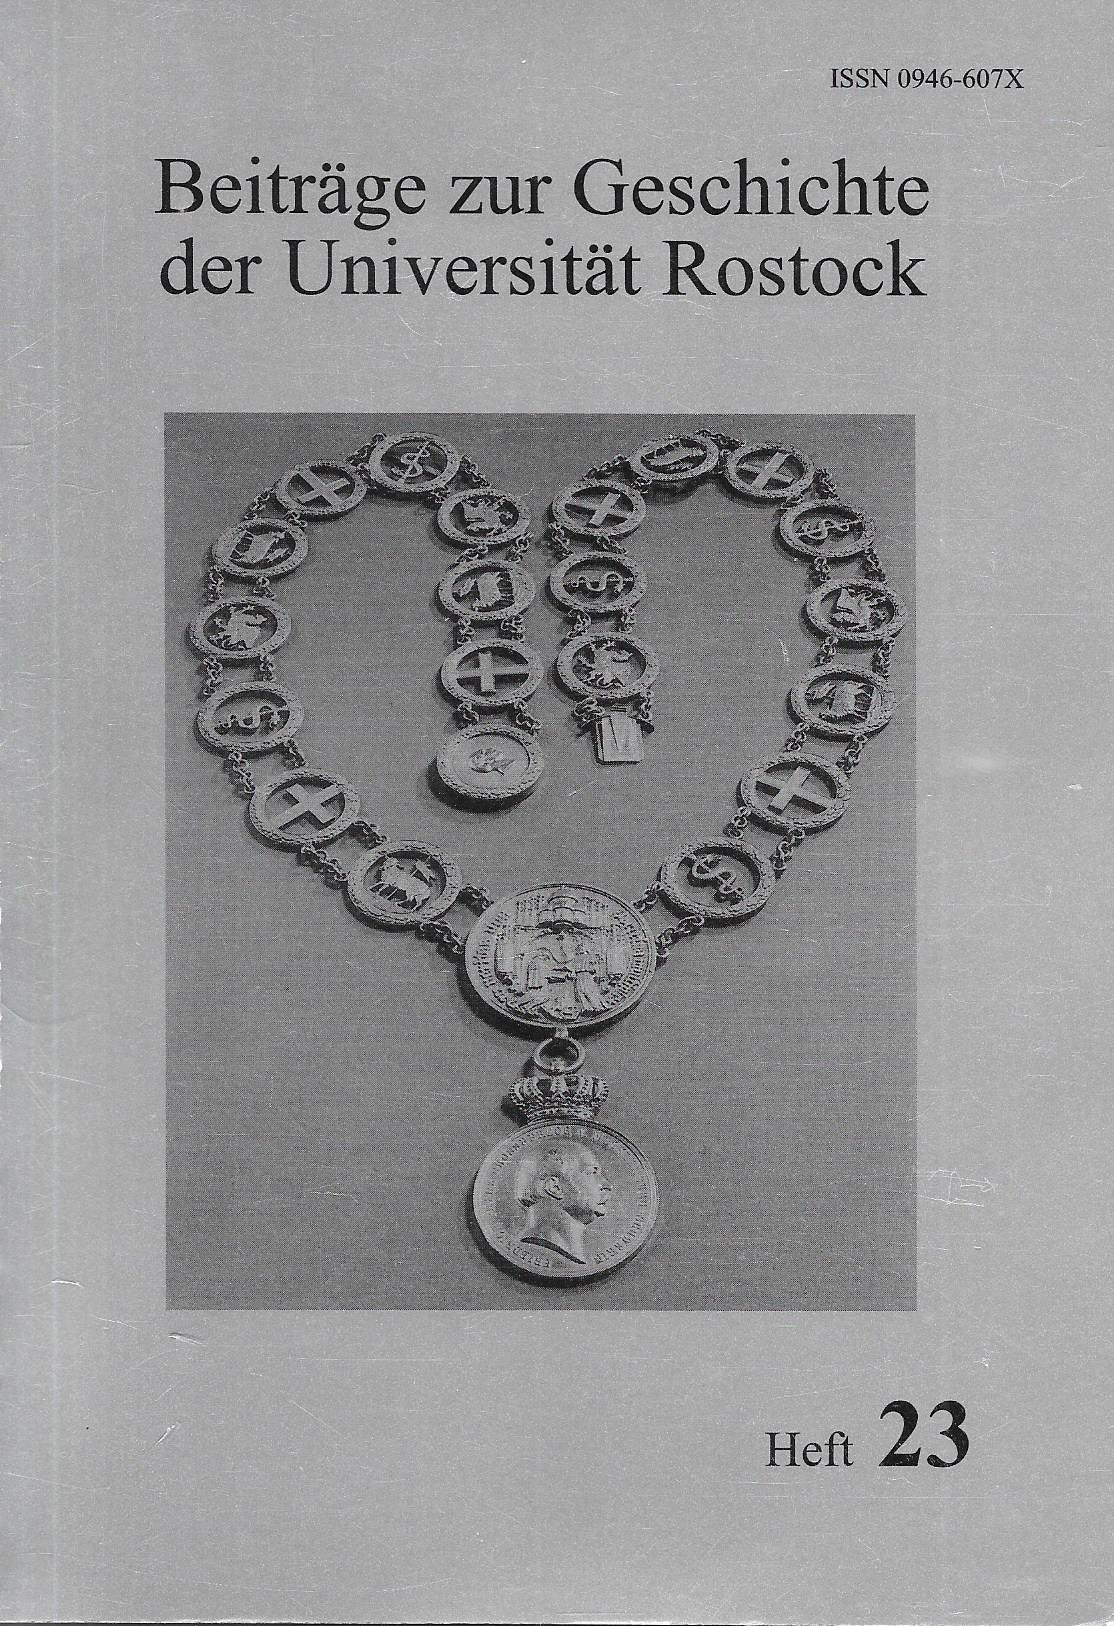 Beiträge zur Geschichte der Universität Rostock - Die Rektoren der Universität Rostock 1419-2000 (Heft 23) - Hartwig,Angela / Schmidt,Tilmann